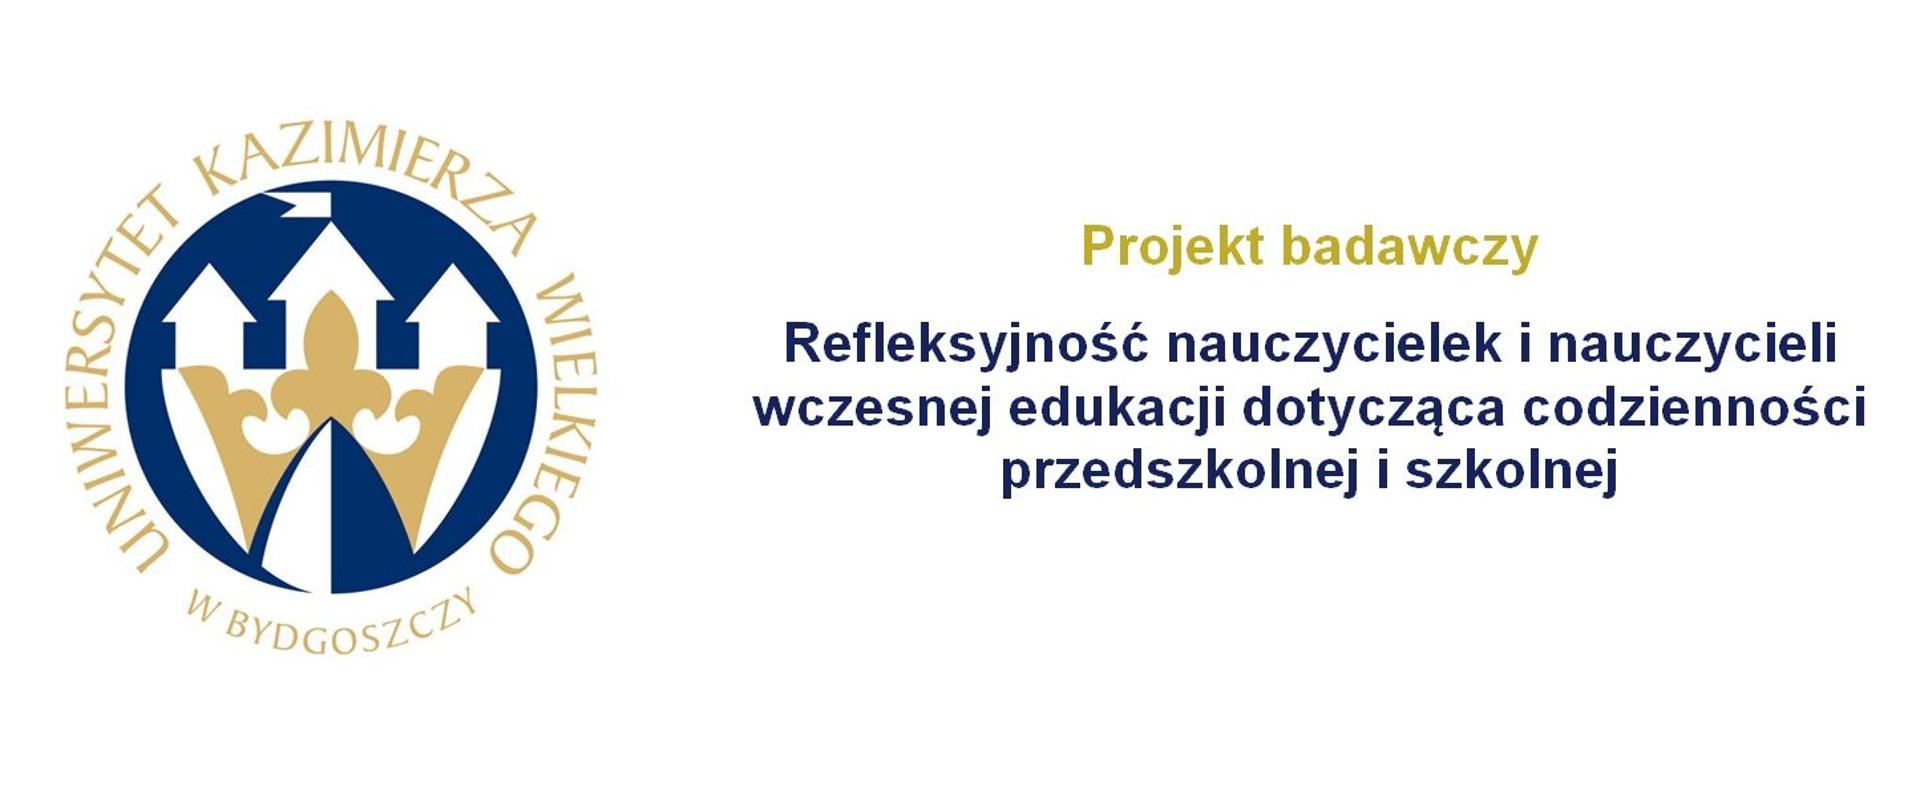 Logo UKW w Bydgoszczy oraz tytuł Projekt badawczy pt. Refleksyjność nauczycielek i nauczycieli wczesnej edukacji dotycząca codzienności przedszkolnej i szkolnej